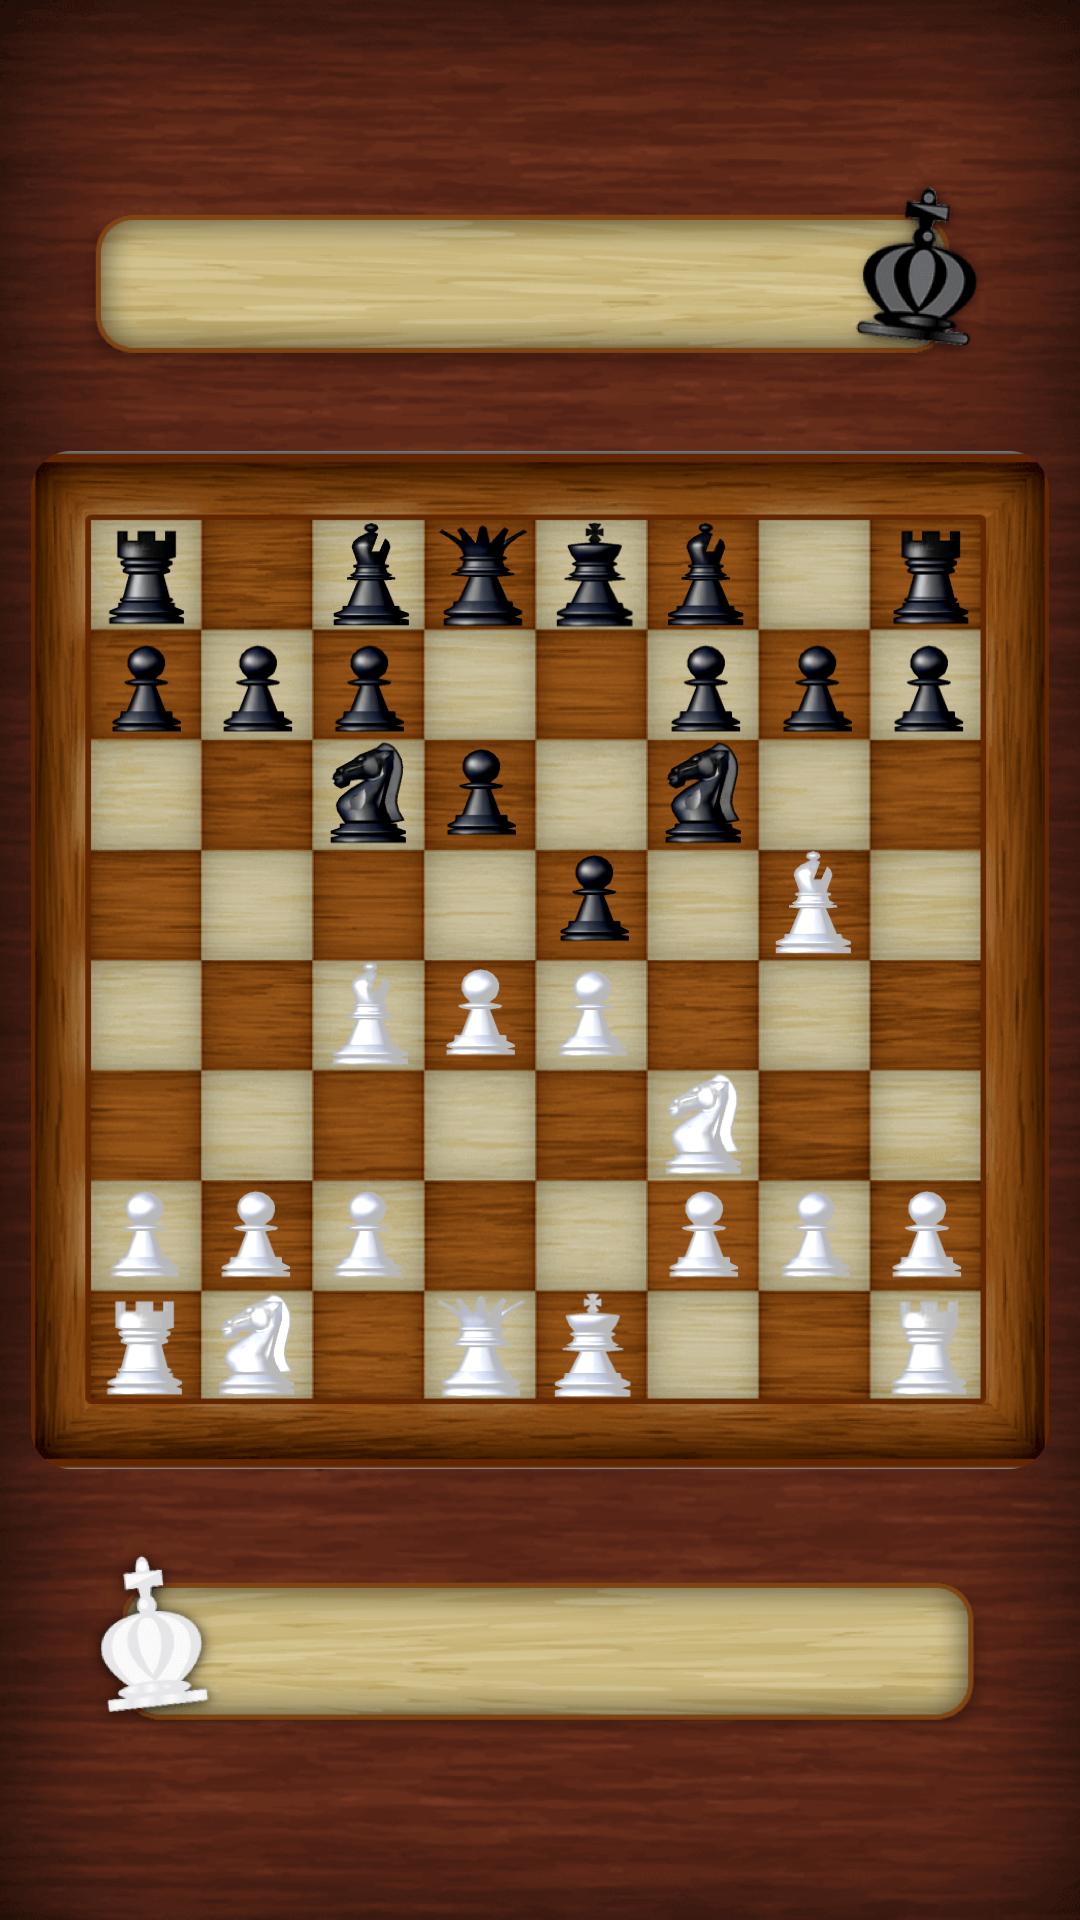 Chess Strategy board game 3.0.6 Screenshot 6